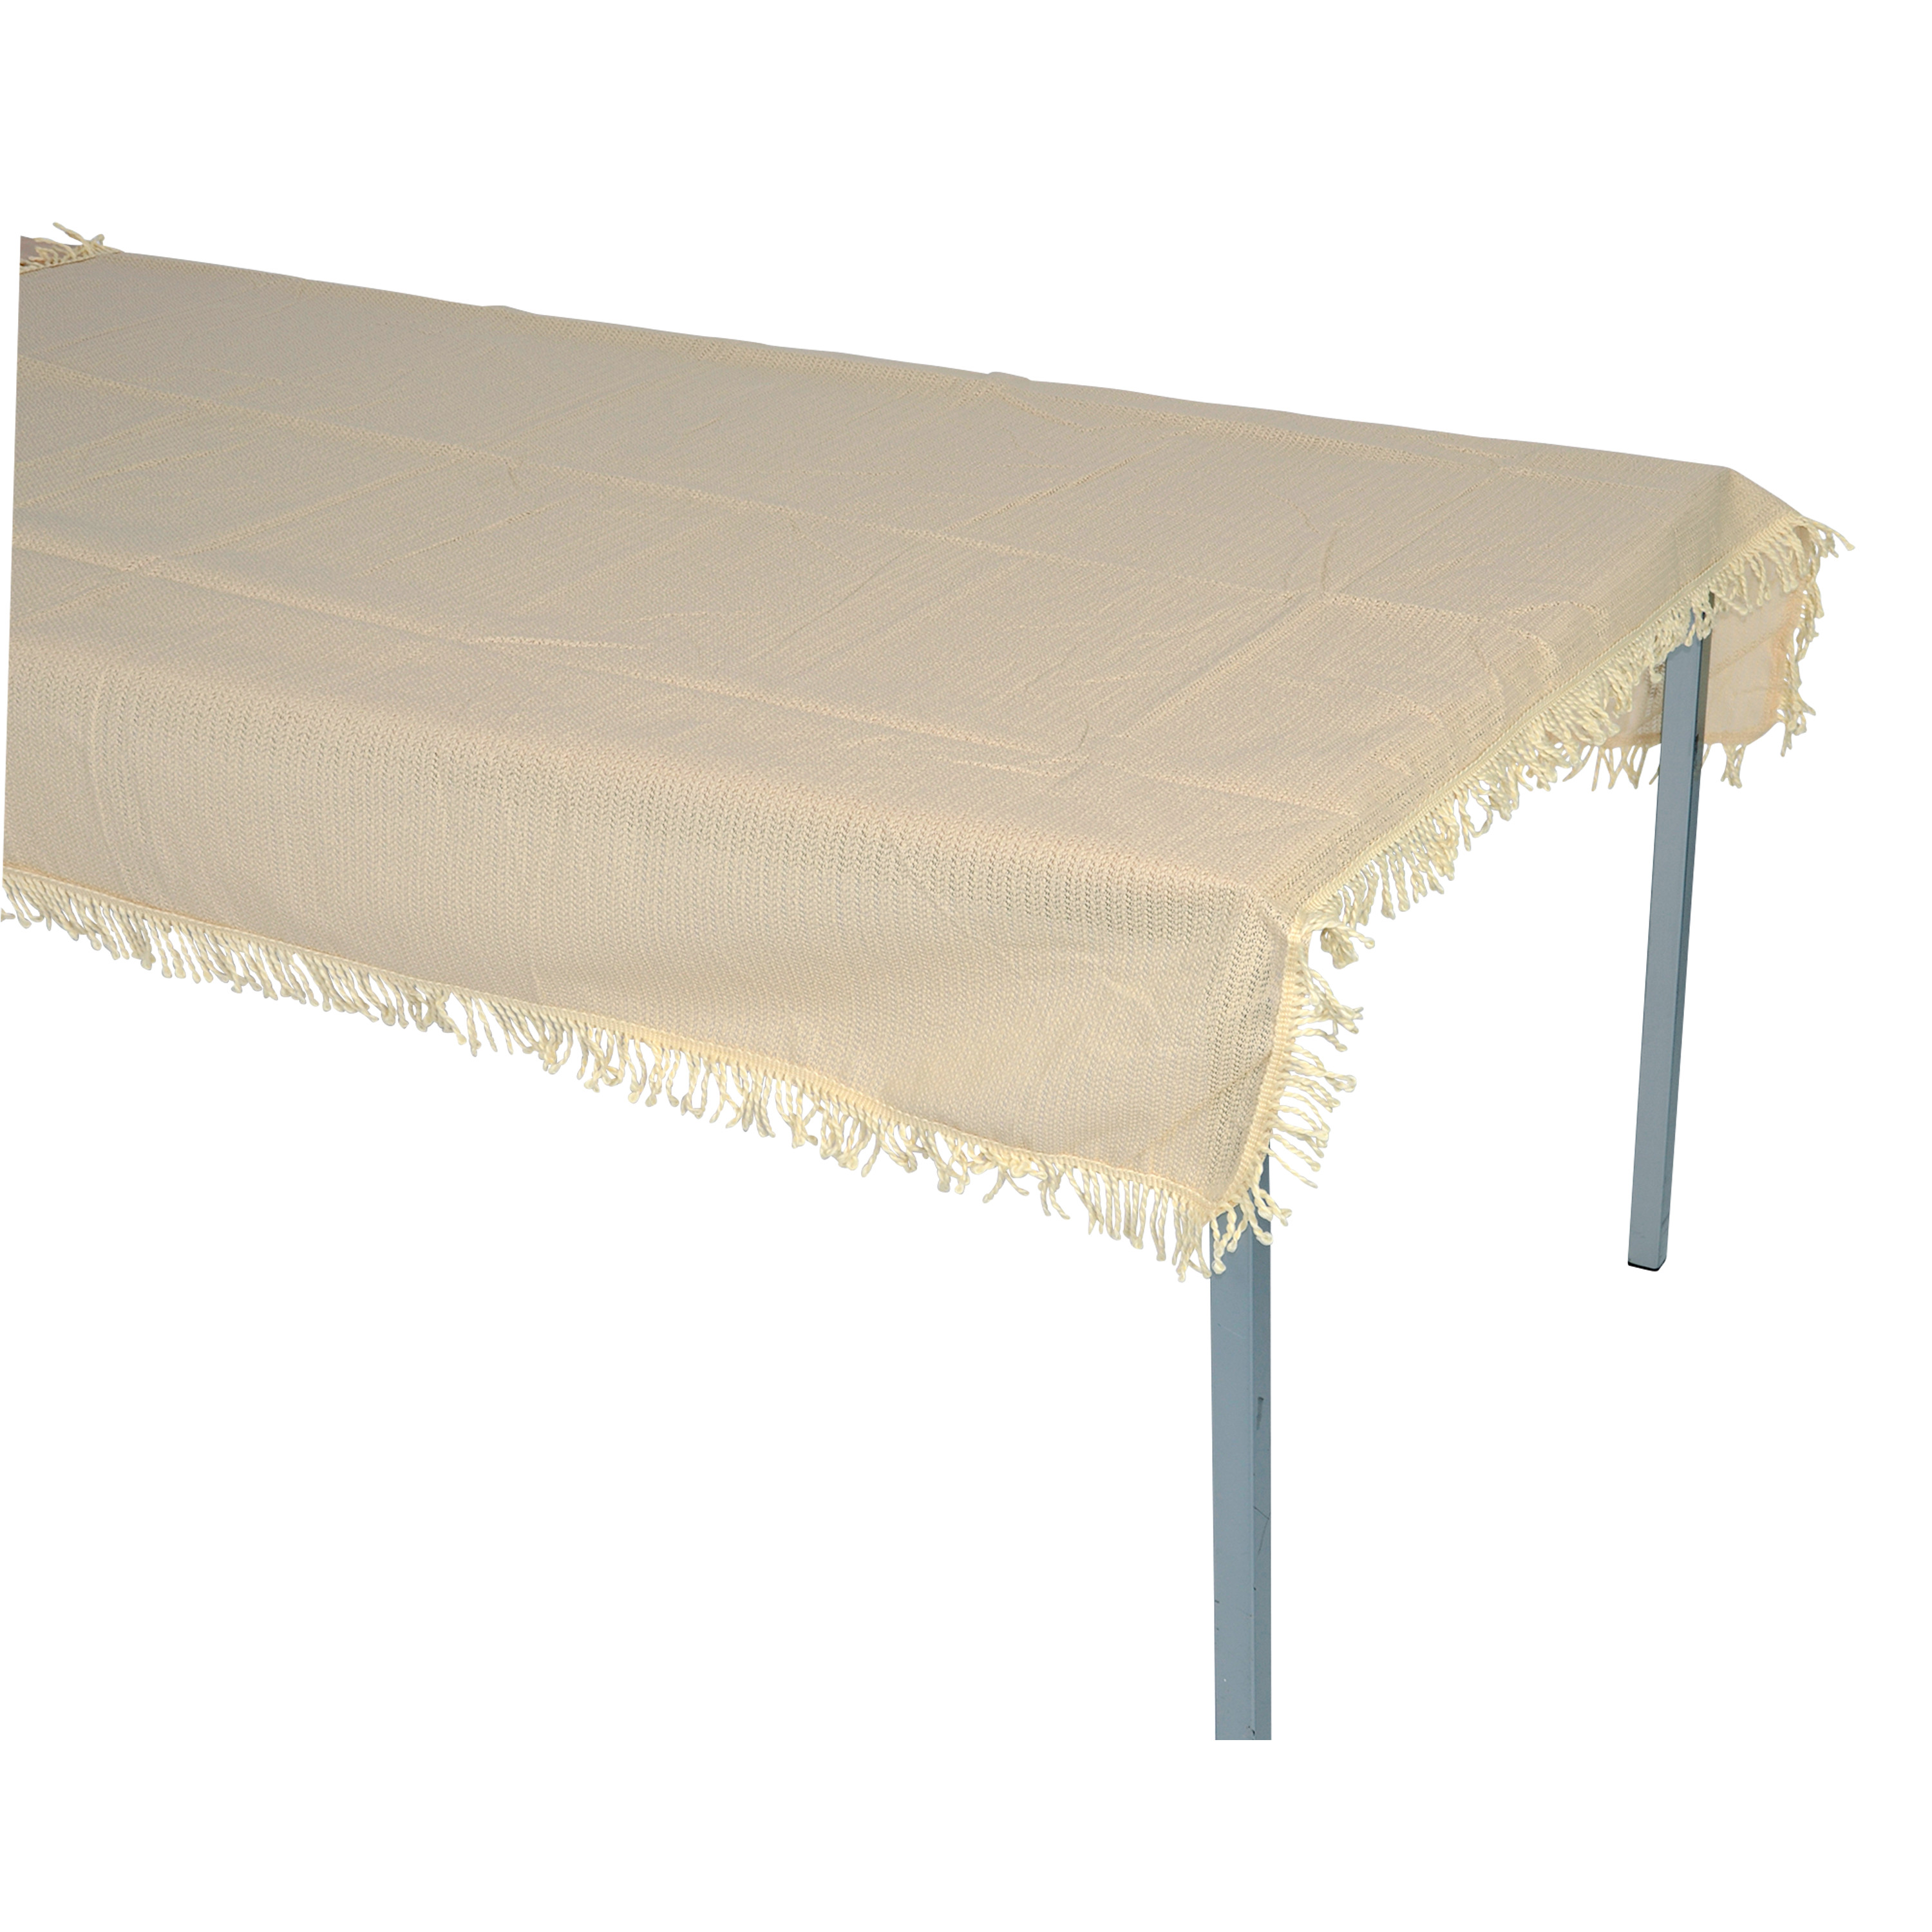 Tischdecke aus Kunststoff 140x180cm rechteckig, beige, wetterfest